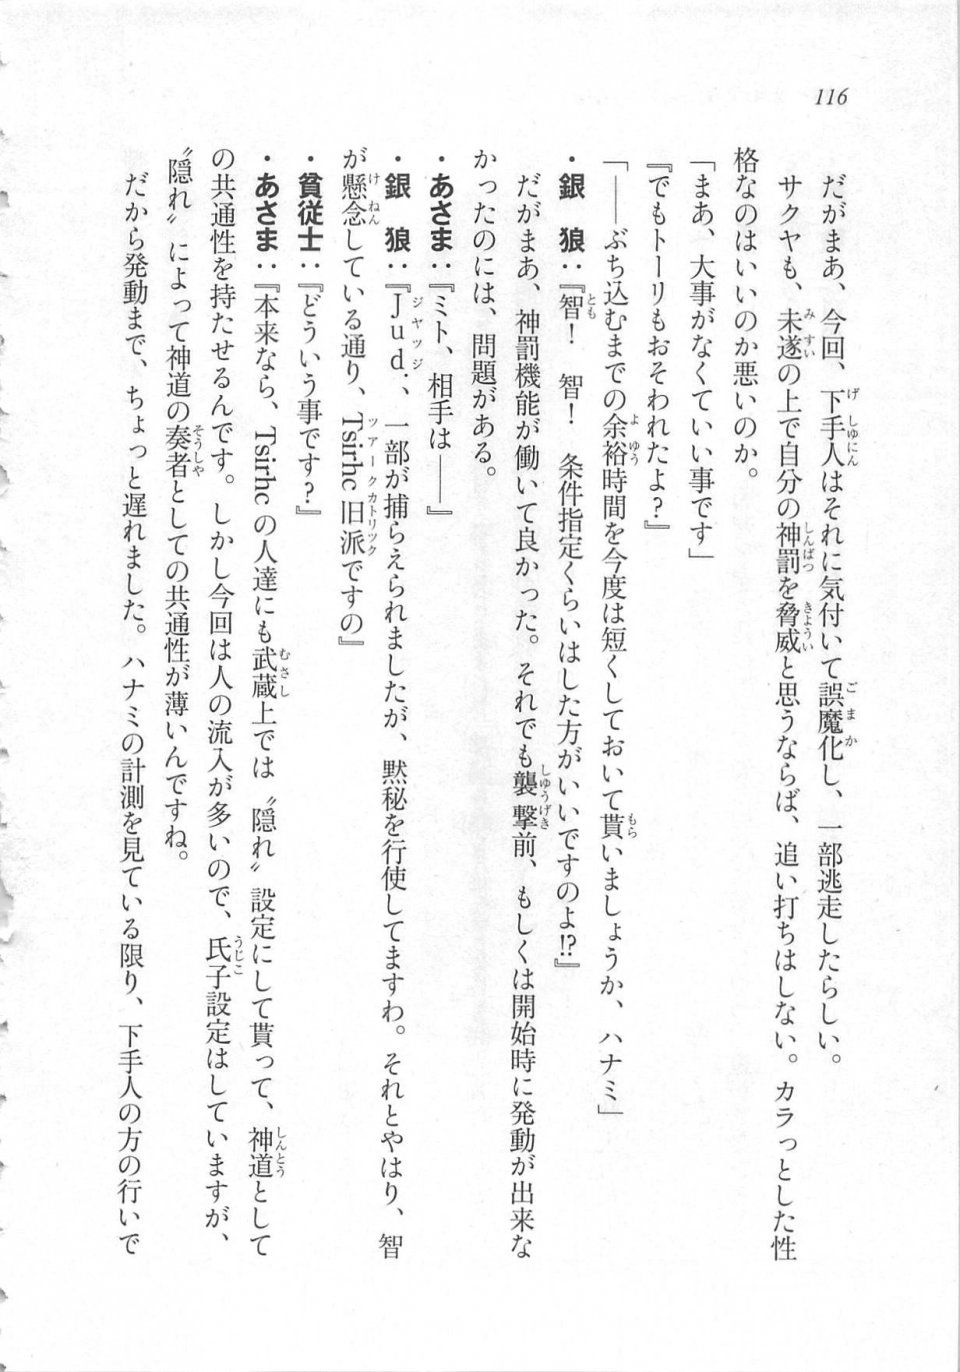 Kyoukai Senjou no Horizon LN Sidestory Vol 3 - Photo #120